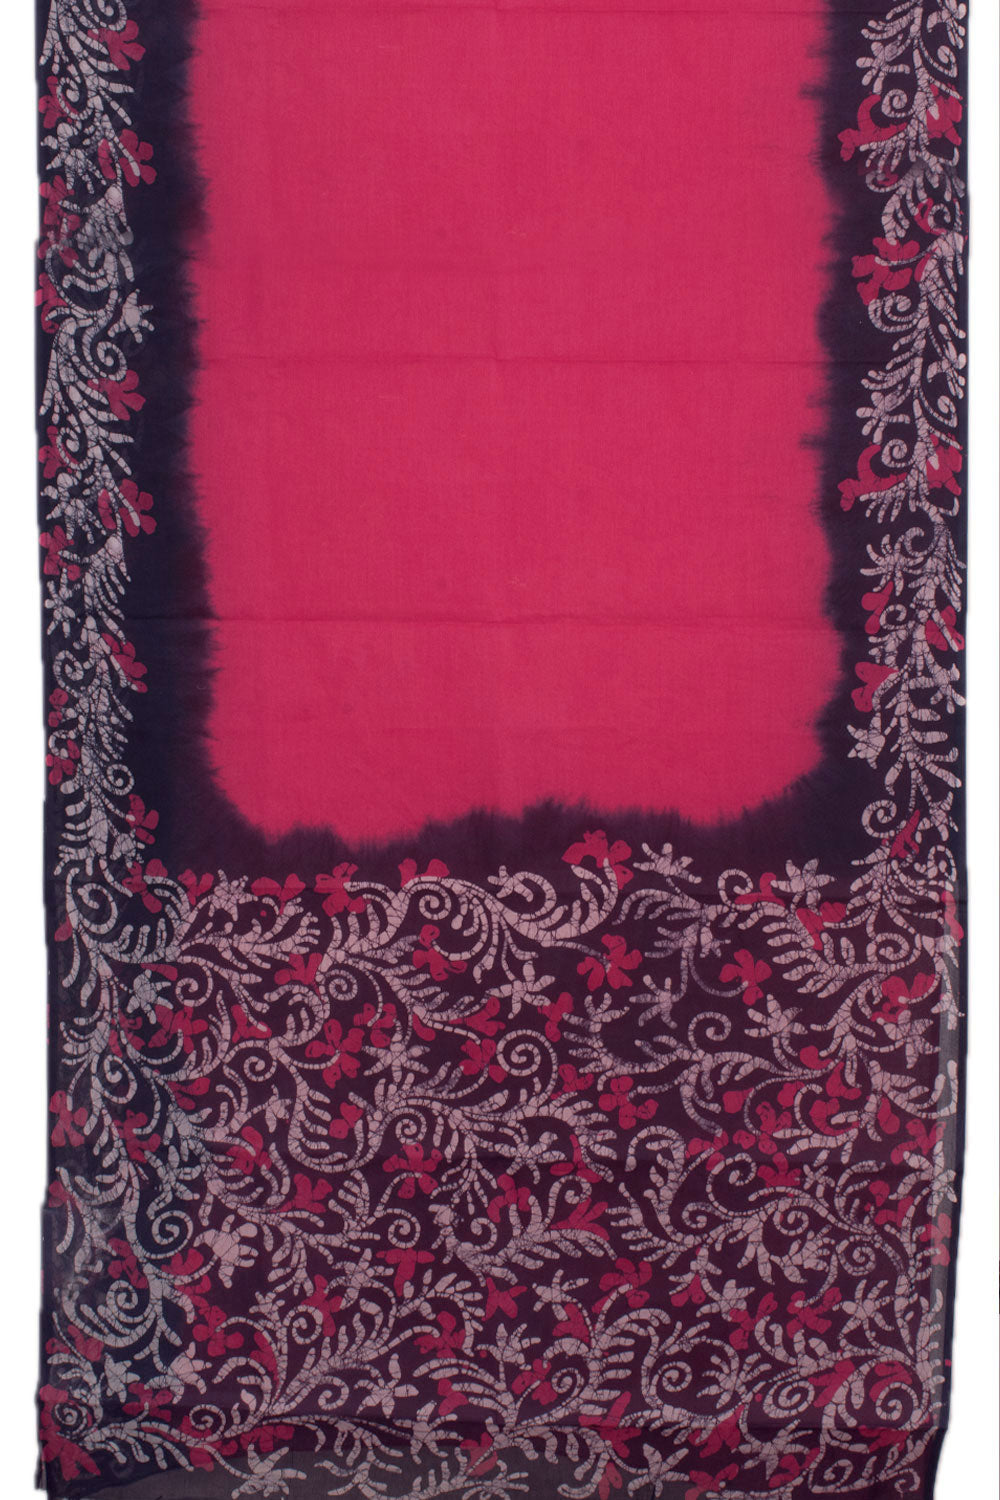 Batik Printed Cotton Saree 10058016